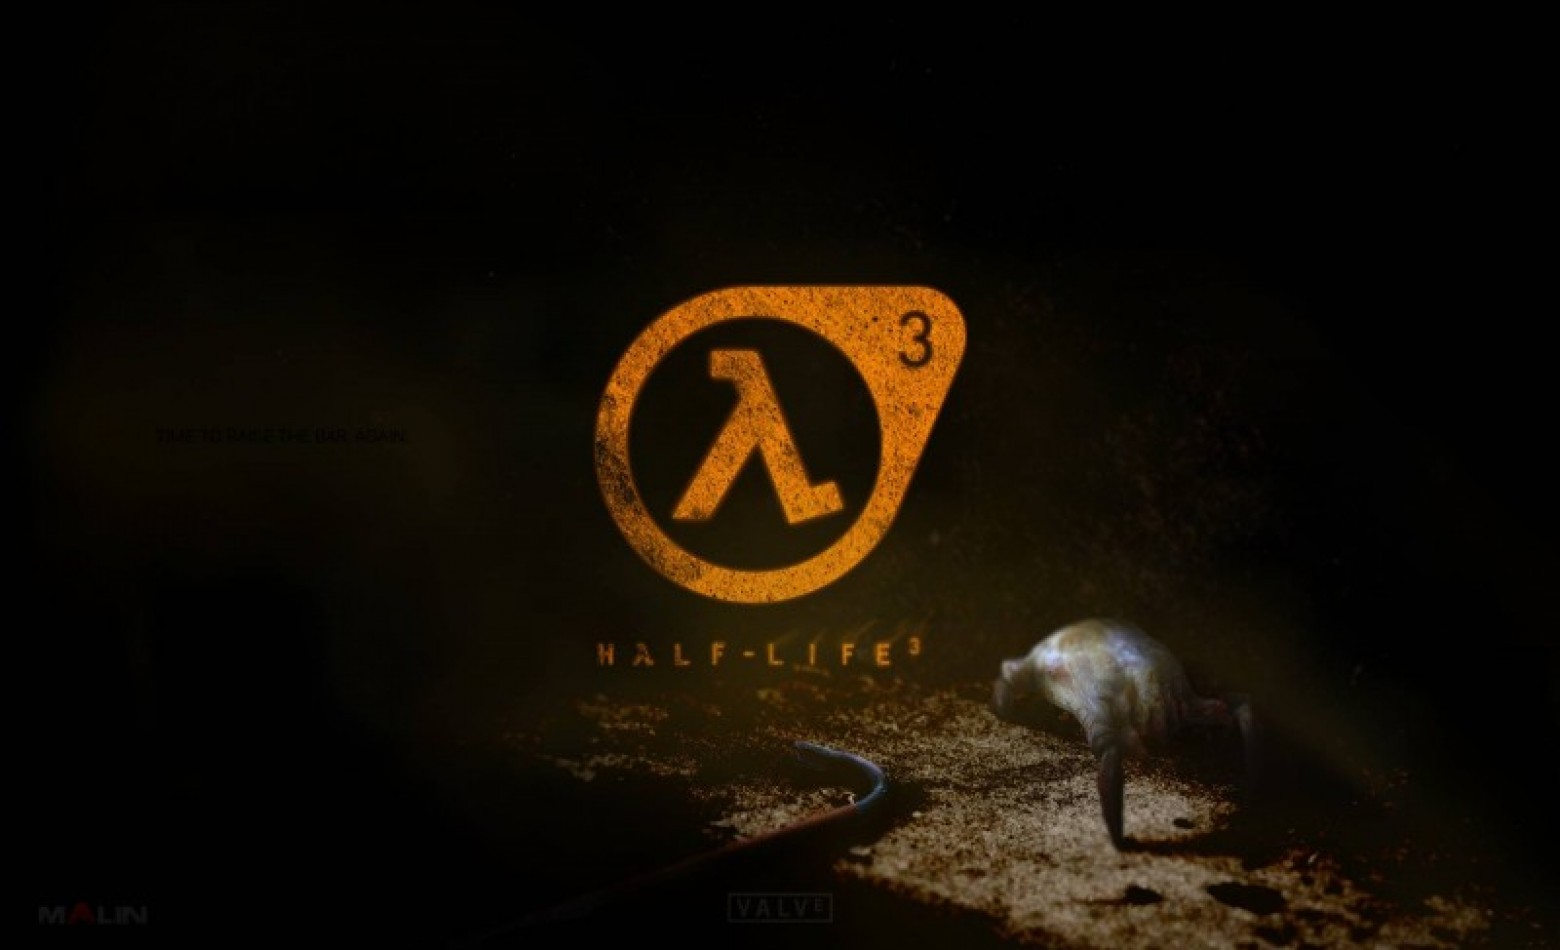 Half-Life 3 parece mesmo estar a caminho